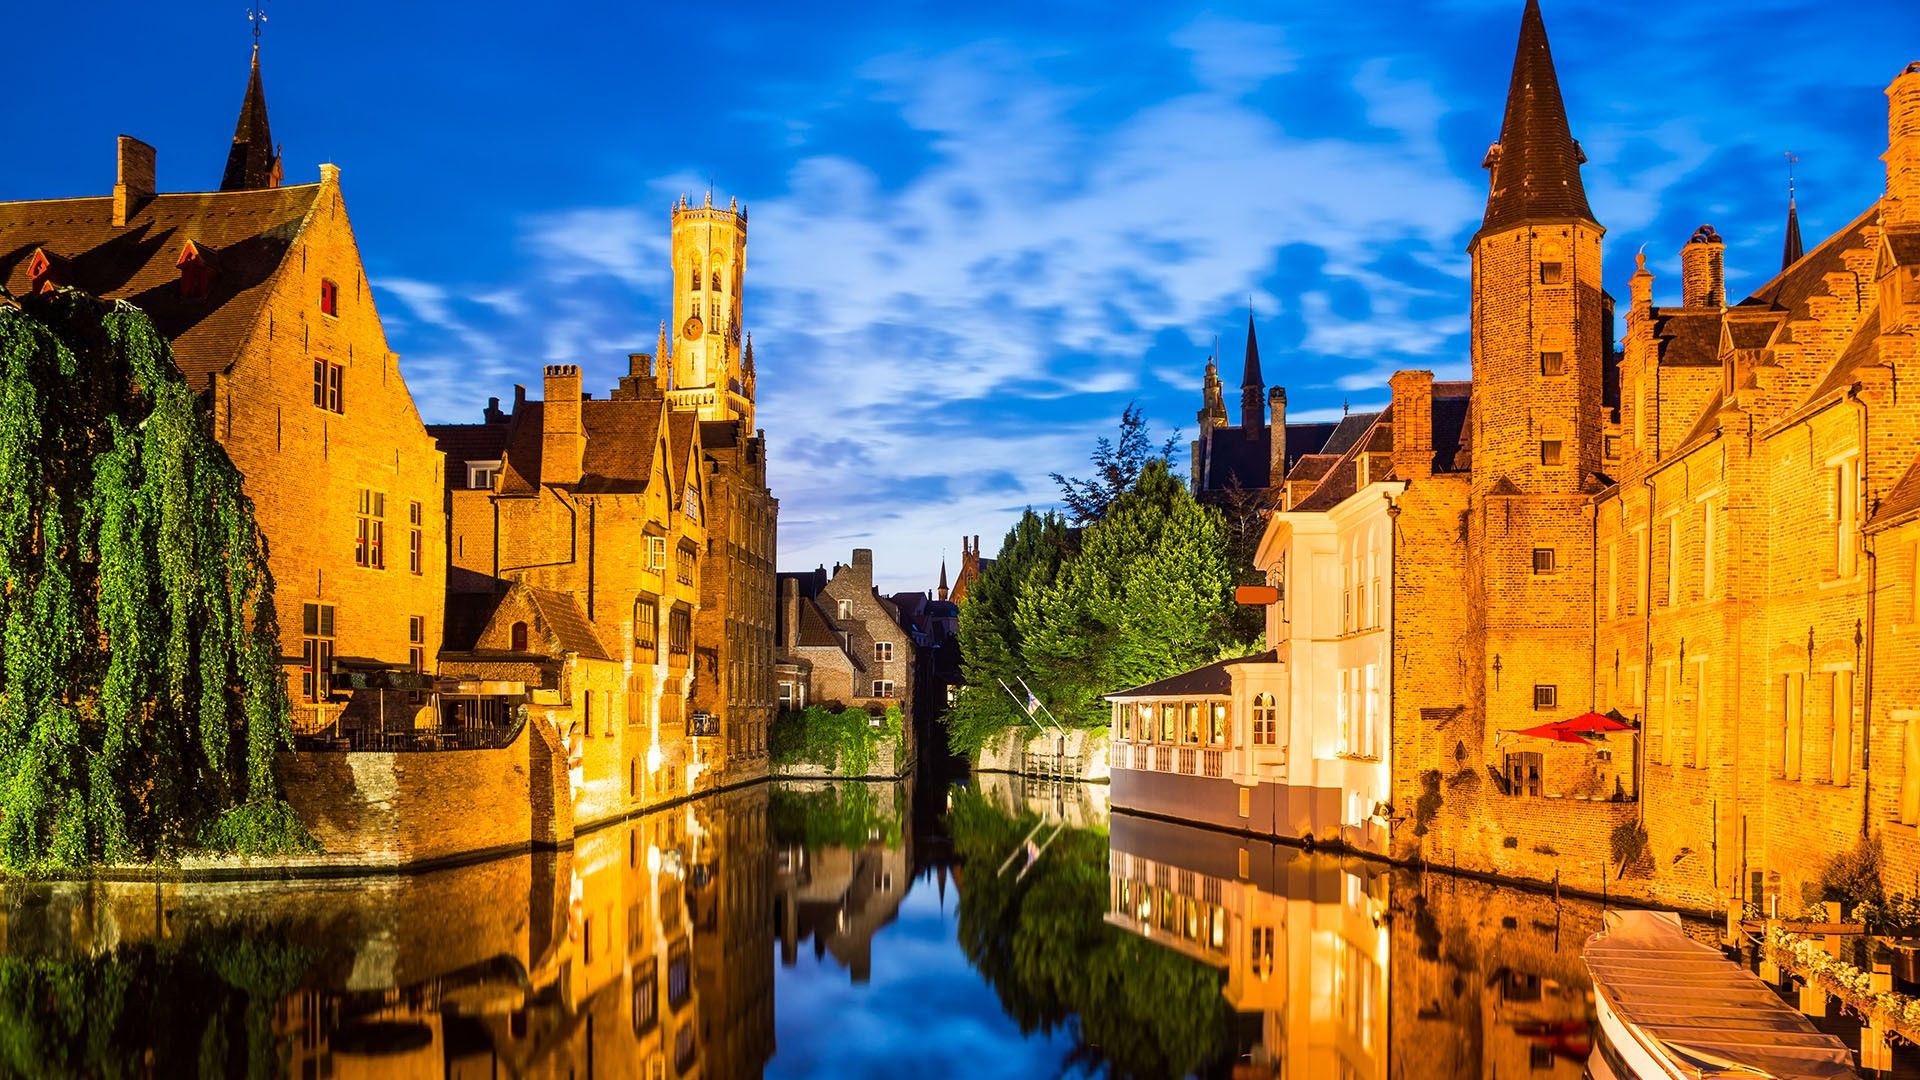 Rozenhoedkaai, Dijver river canal twilight and Belfort (Belfry) tower, Bruges, Belgium. Windows 10 Spotlight Image